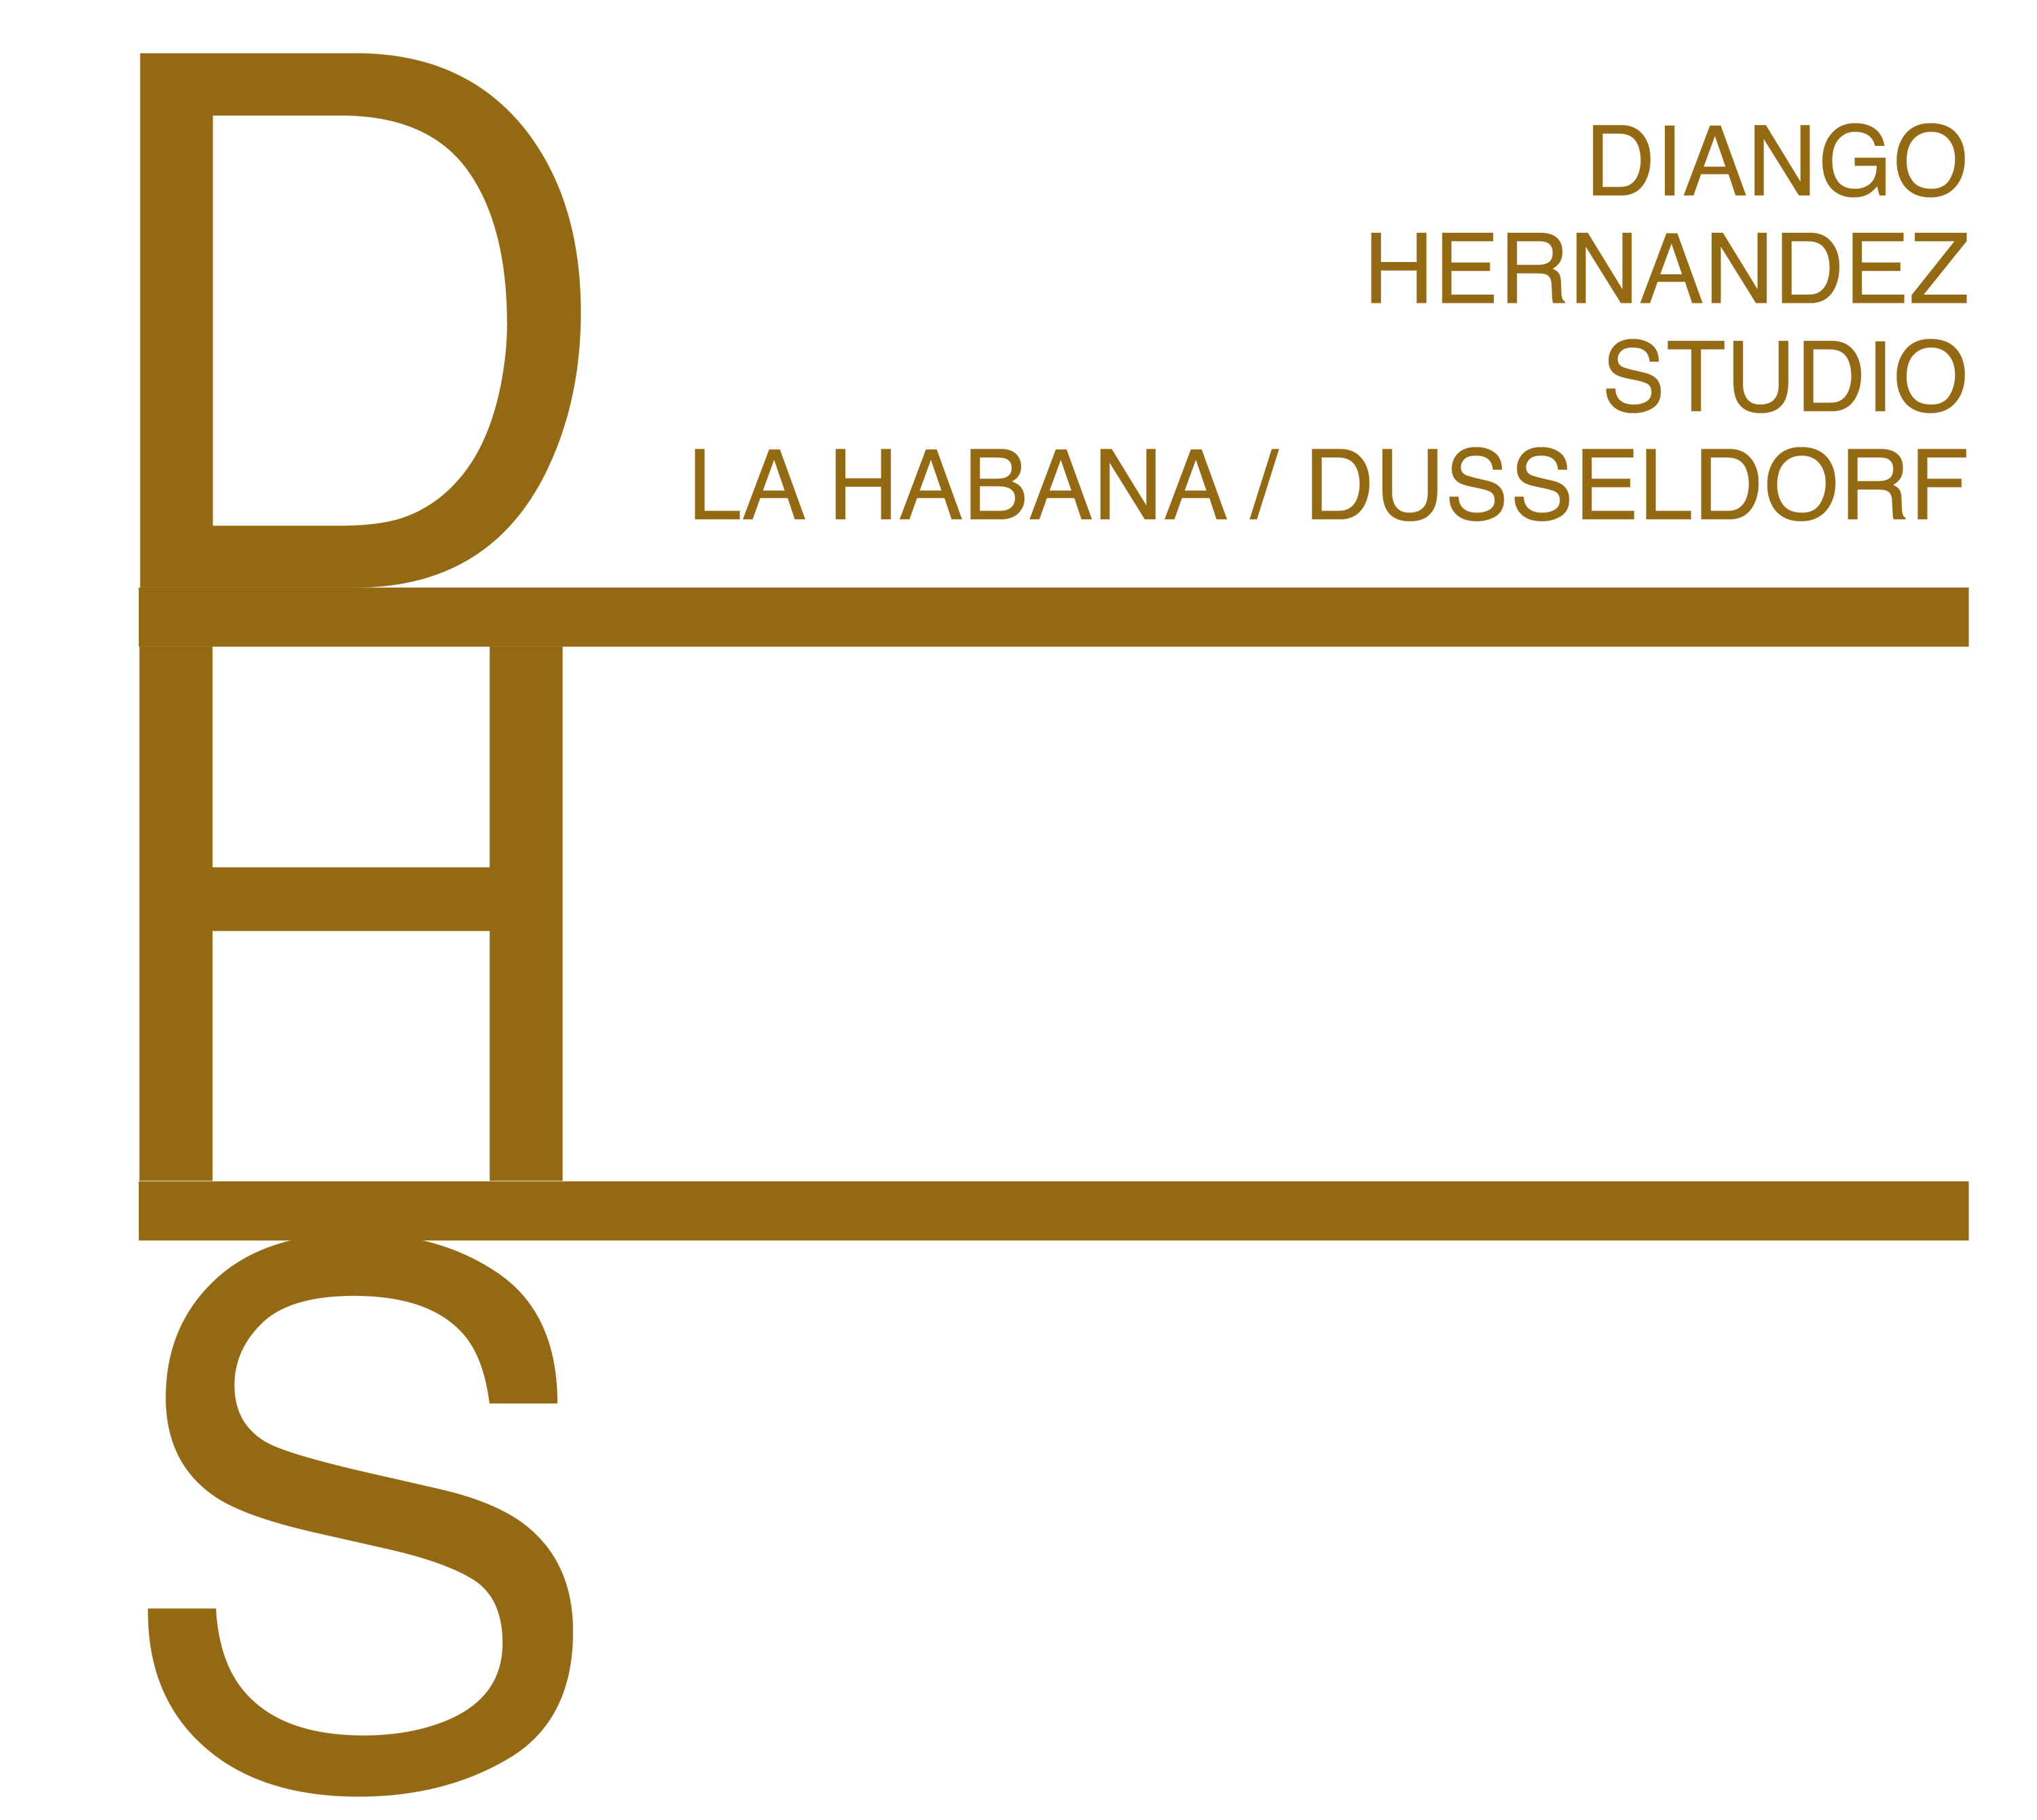 Diango Hernandez Studio